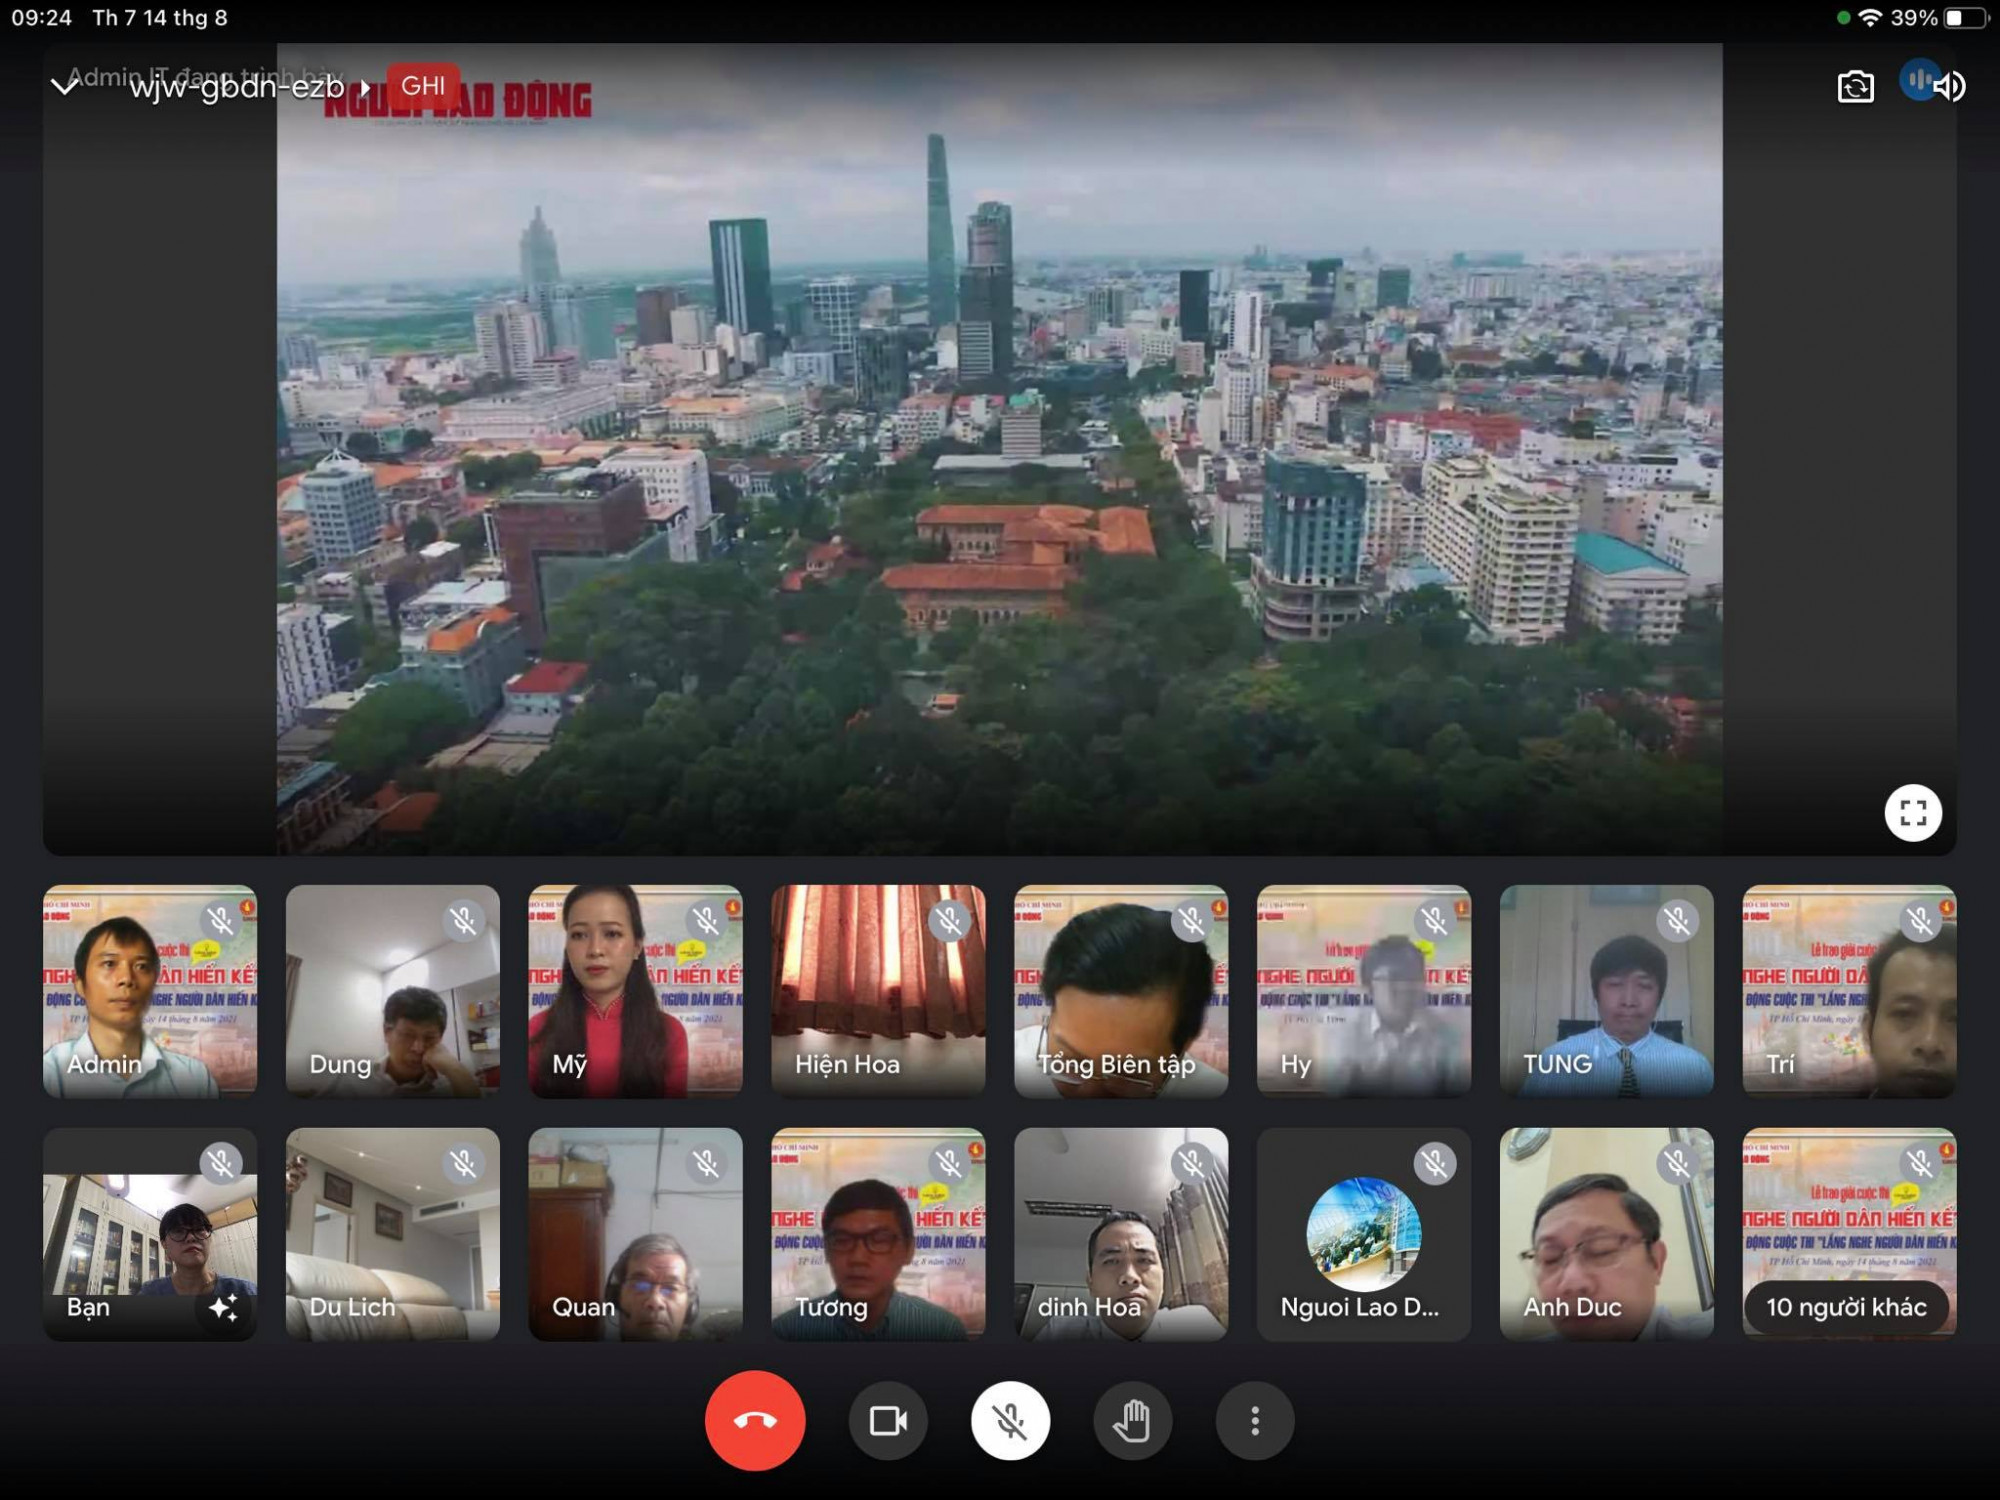 Sáng 14/8, Báo Người Lao Động đã tổ chức trực tuyến lễ trao giải cuộc thi Lắng nghe người dân hiến kế lần 2 (2020-2021) và phát động cuộc thi Lắng nghe người dân hiến kế lần 3 (2021-2022).